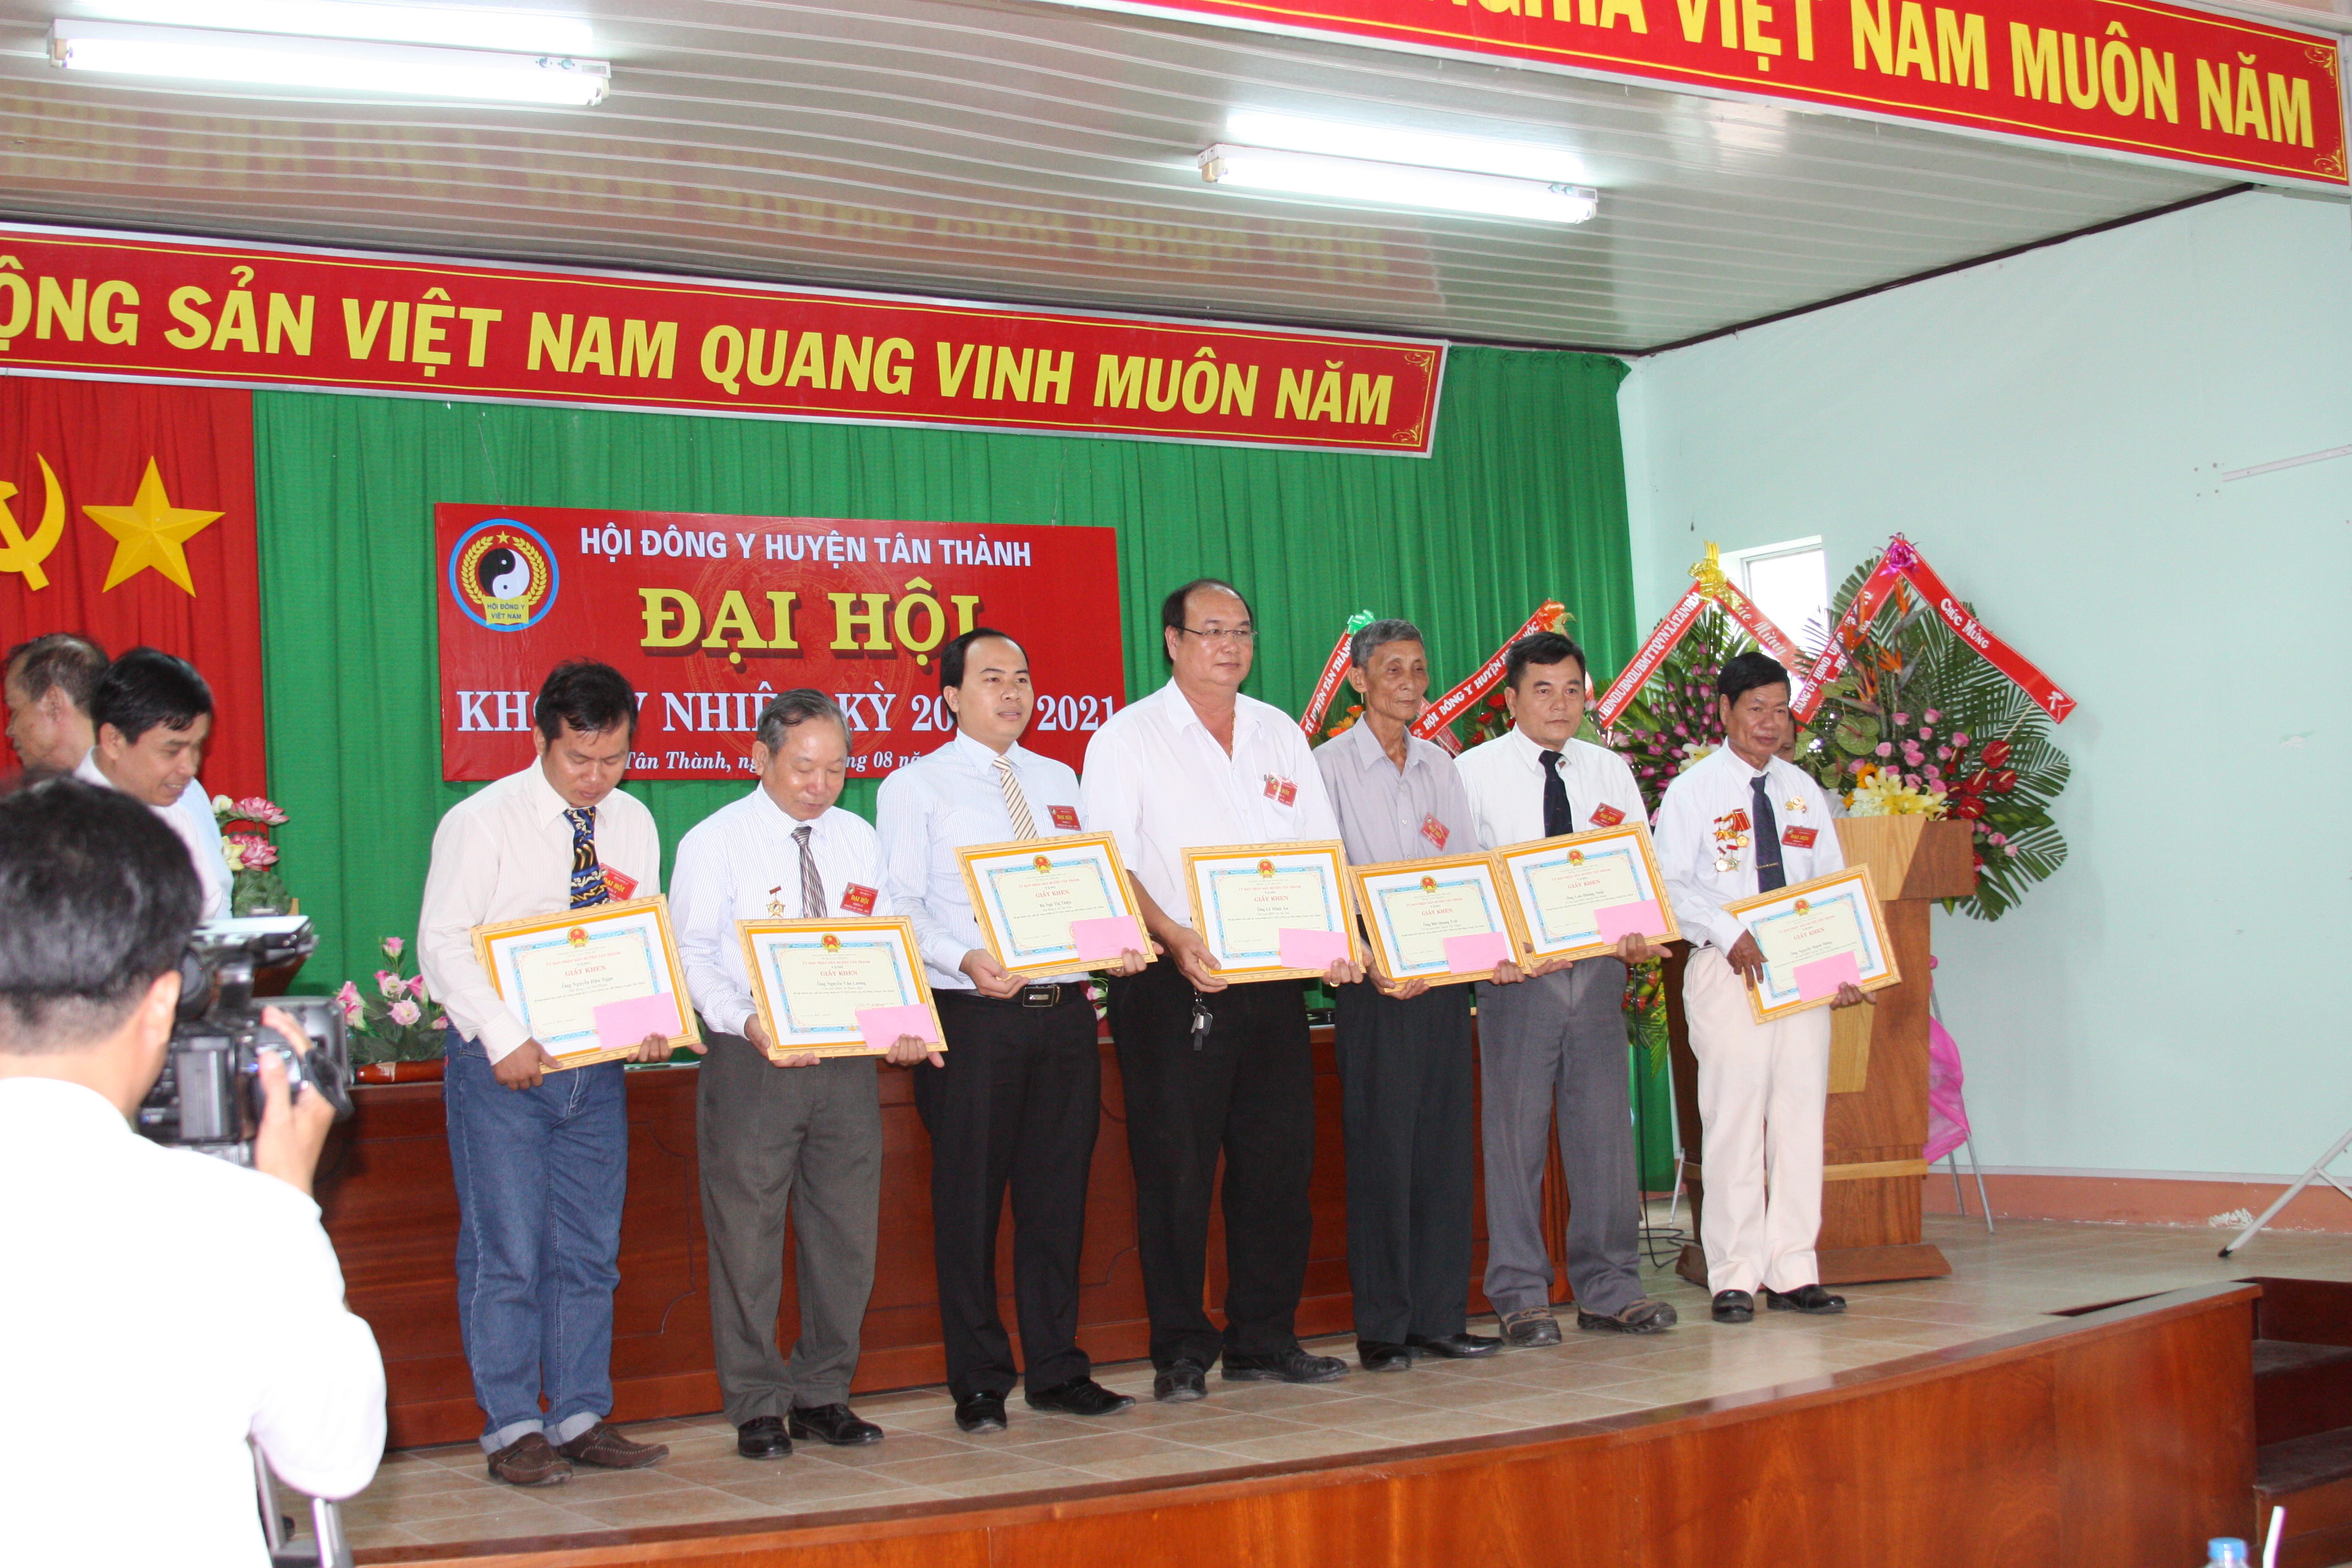 Lương y Thanh Tuấn nhận bằng khen do Hội Đông y huyện Tân Thành trao tặng